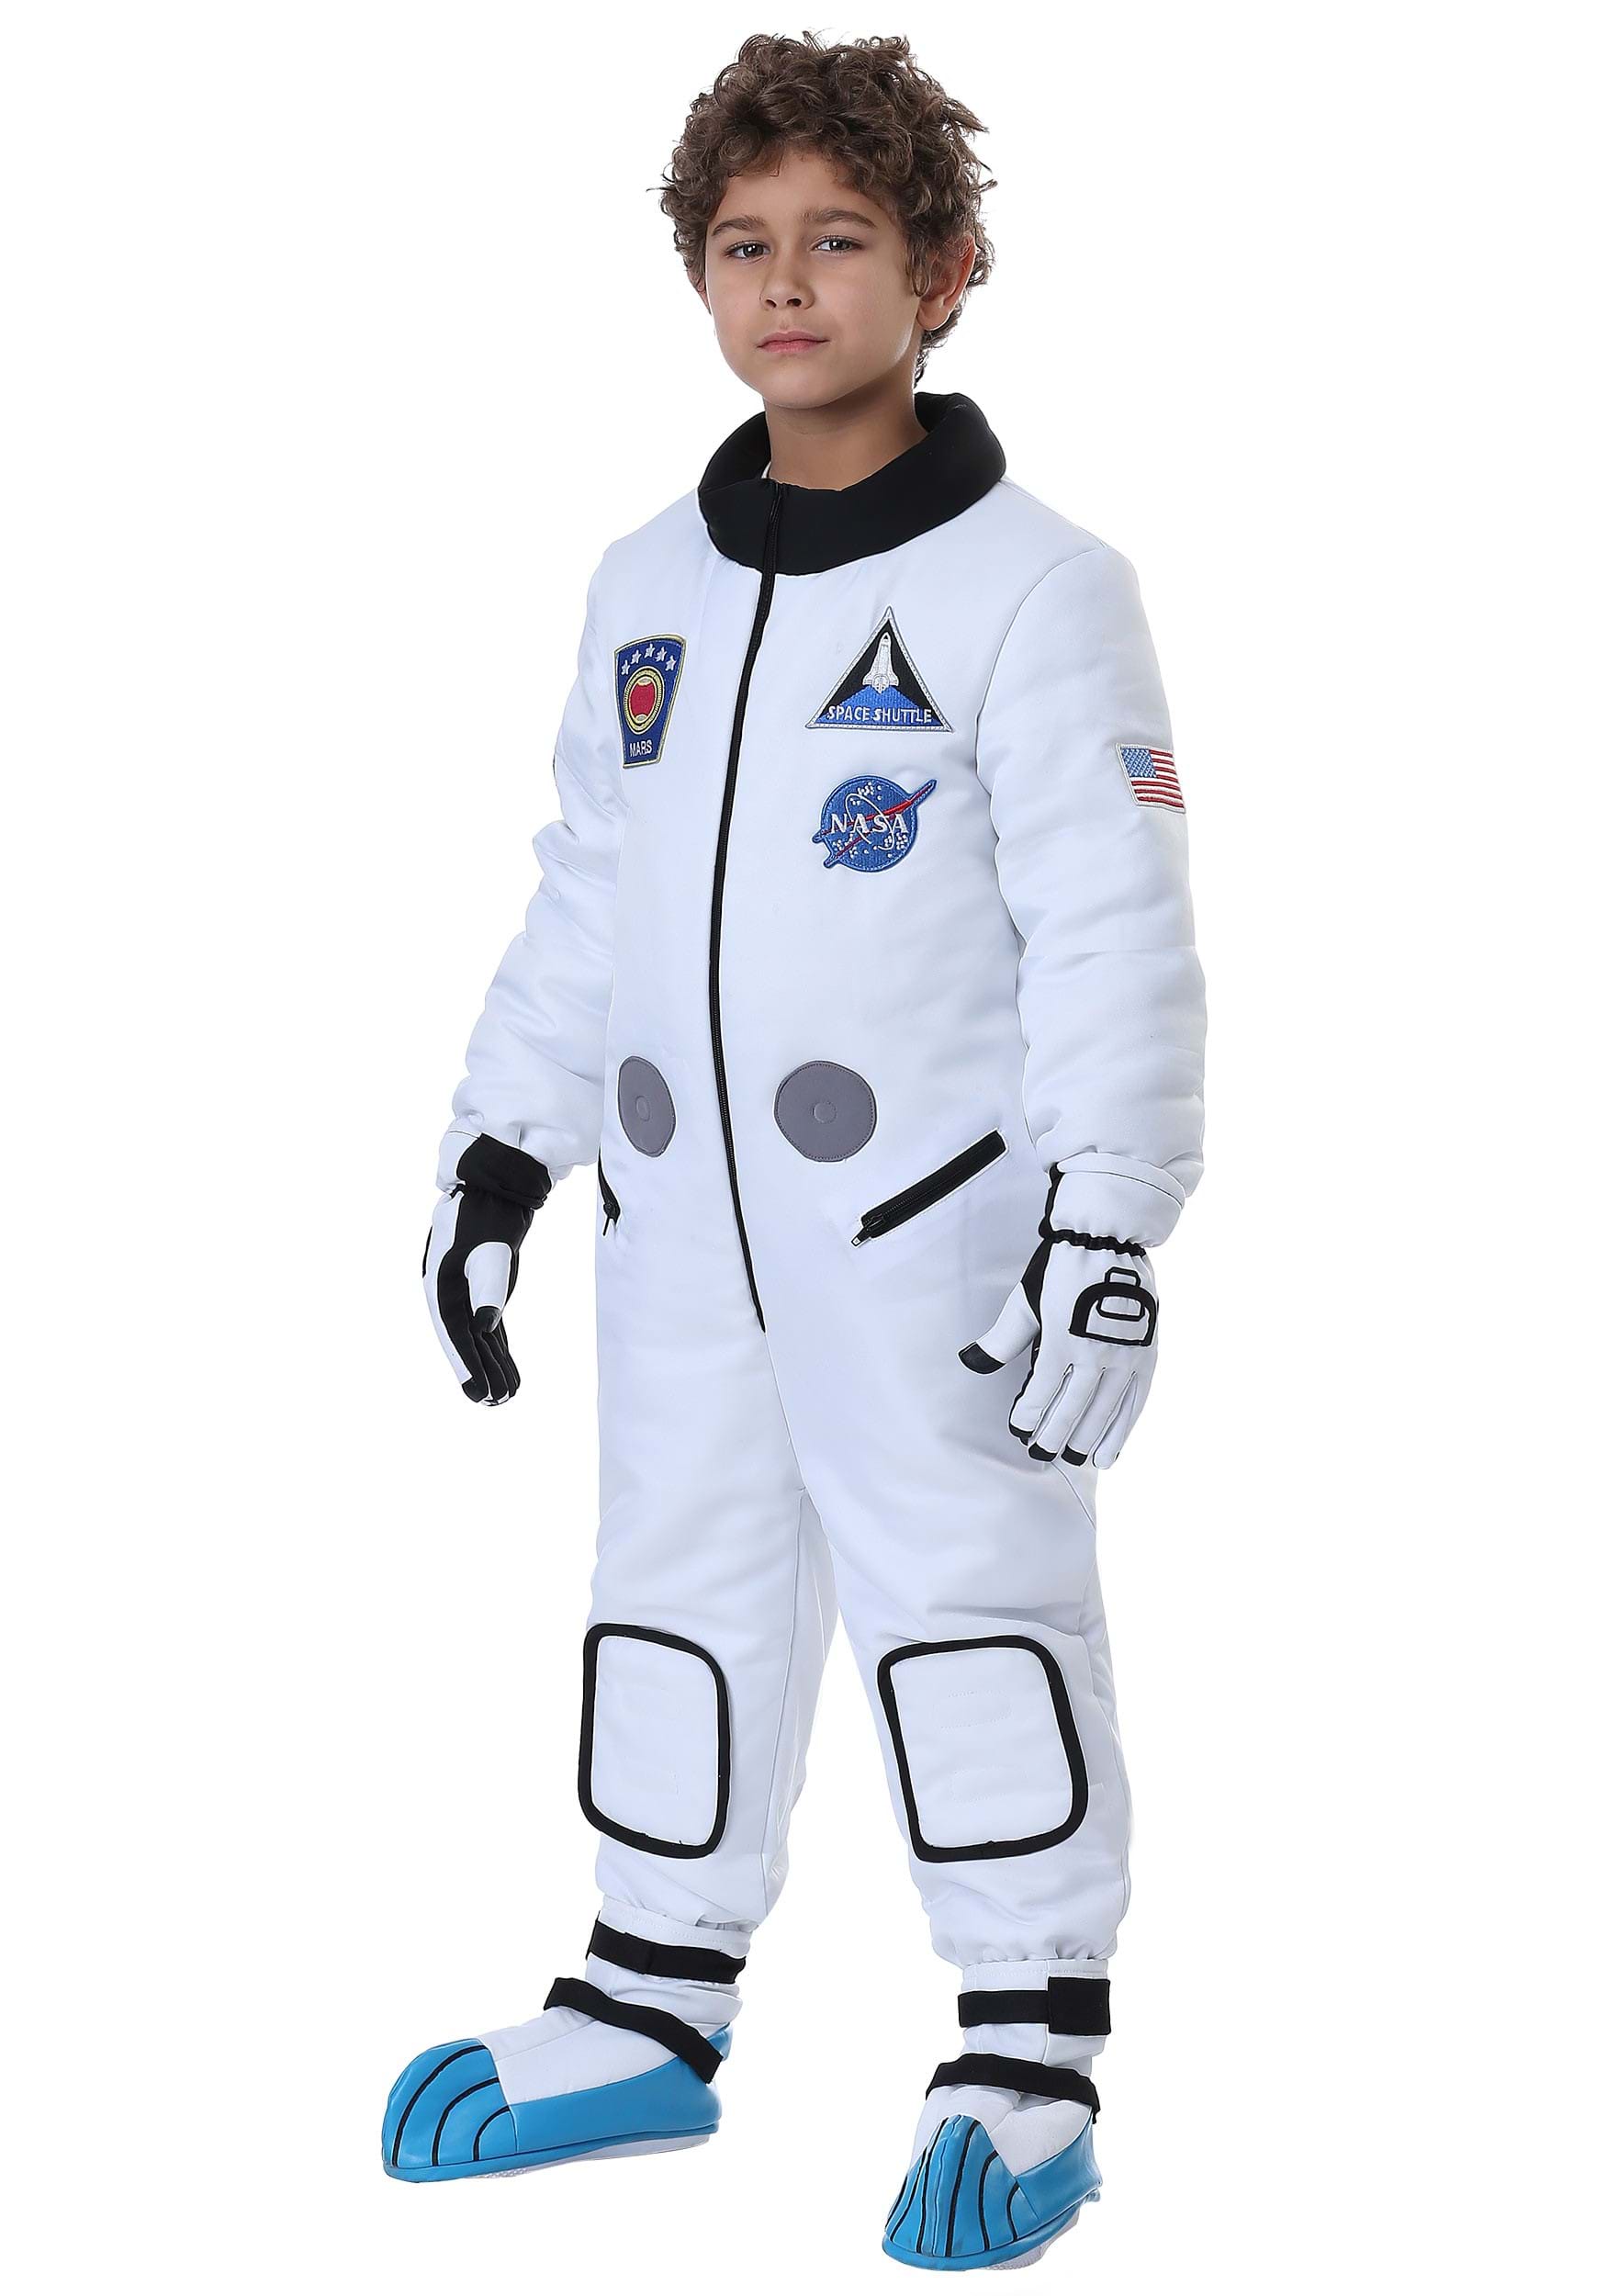 Deluxe Astronaut Children's Costume